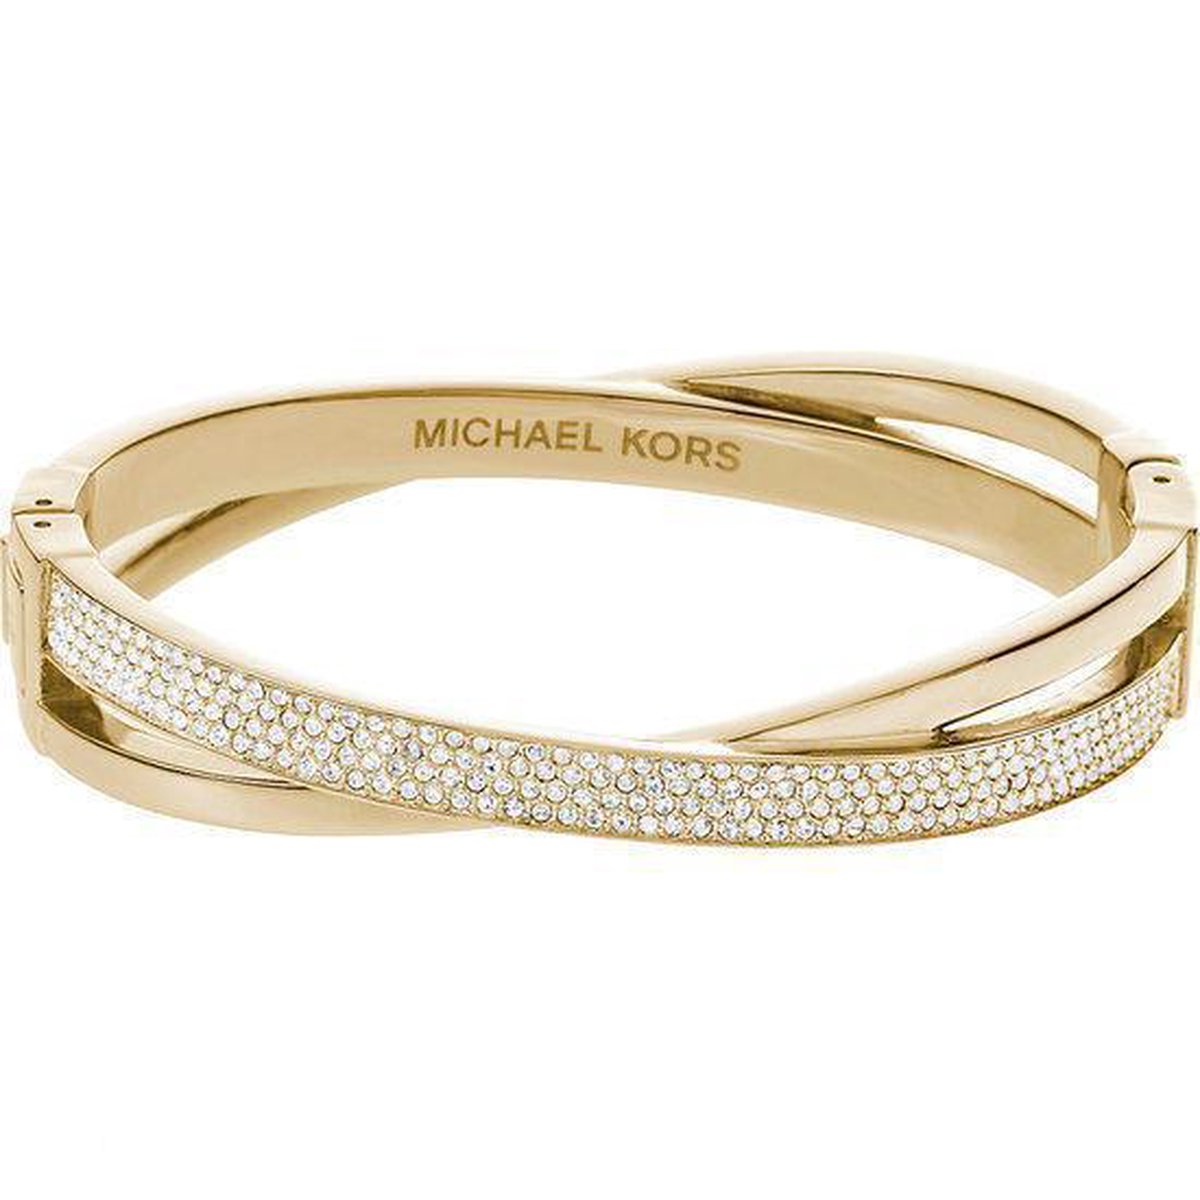 MICHAEL KORS armband online kopen  Gratis verzending